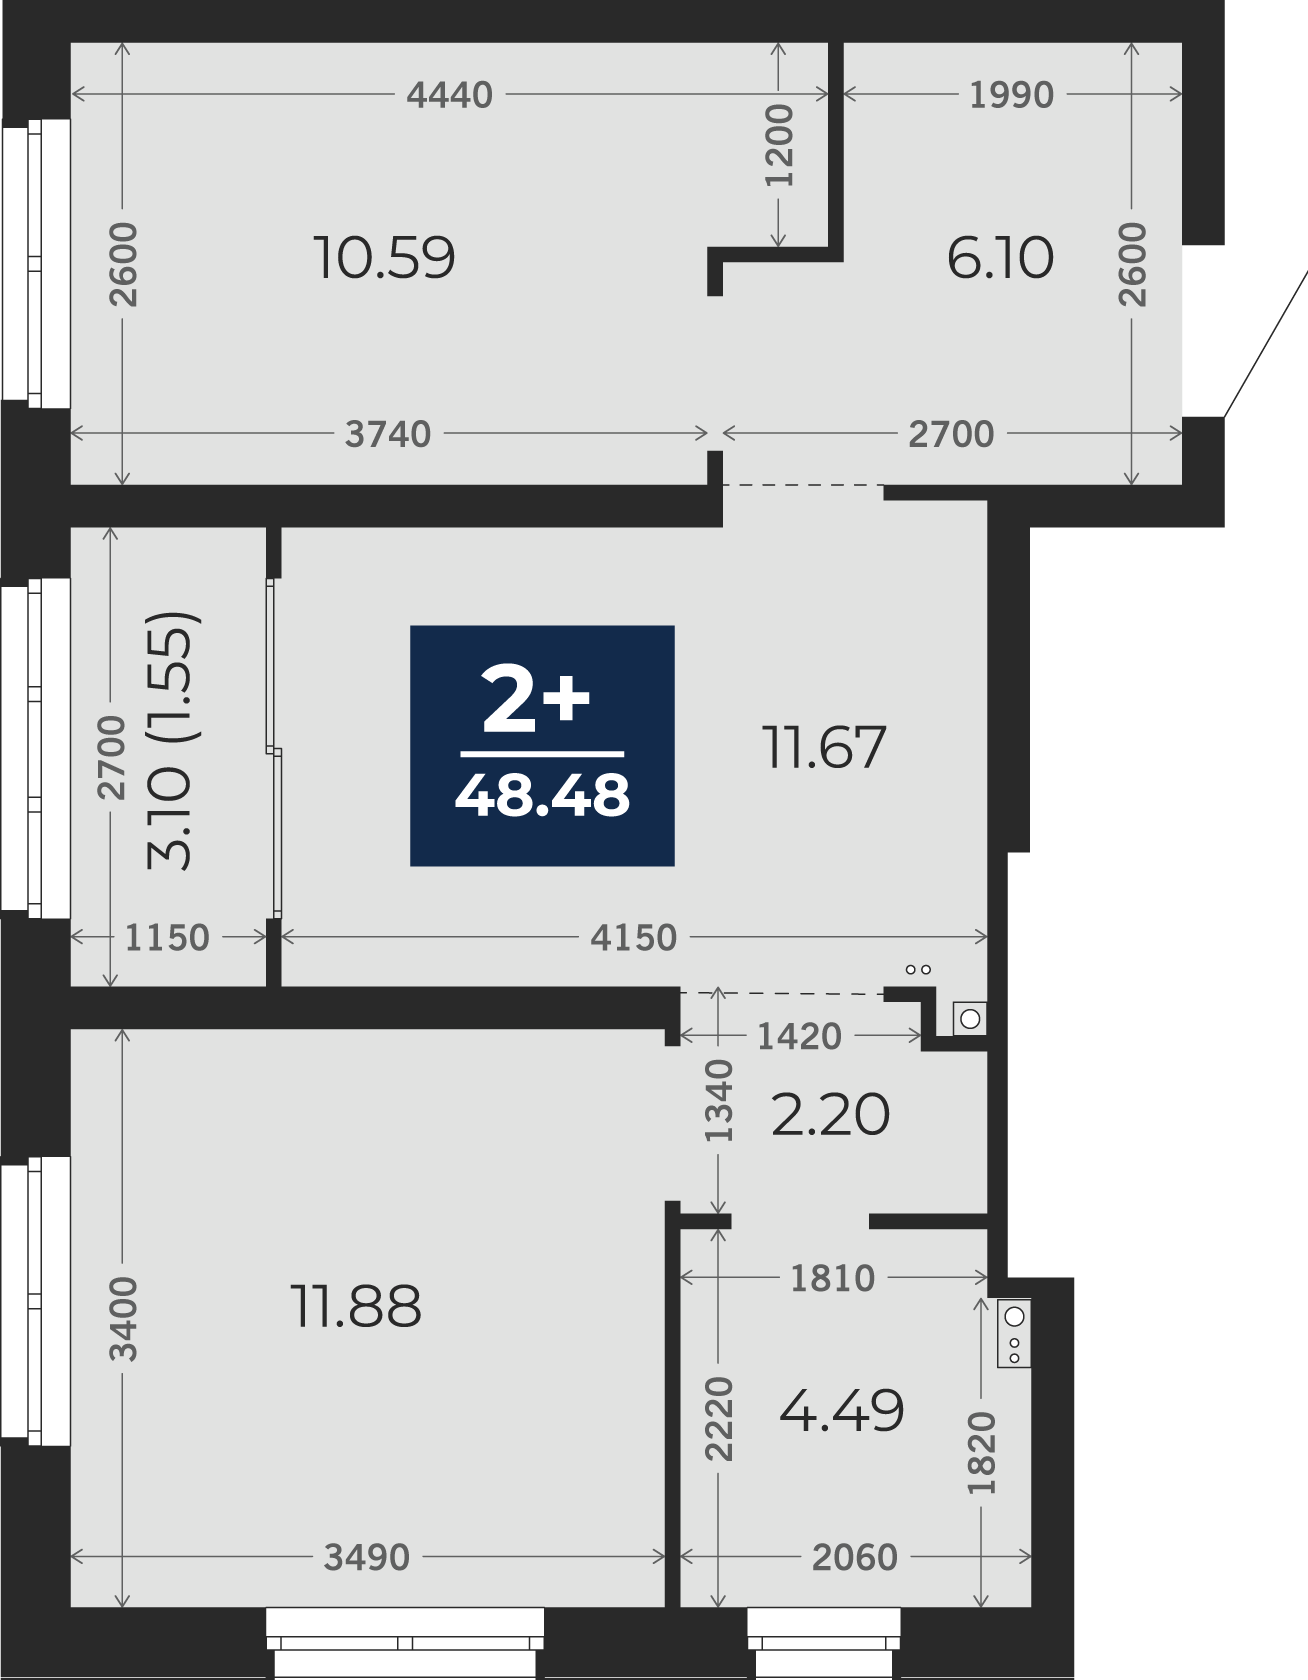 Квартира № 144, 2-комнатная, 48.48 кв. м, 17 этаж